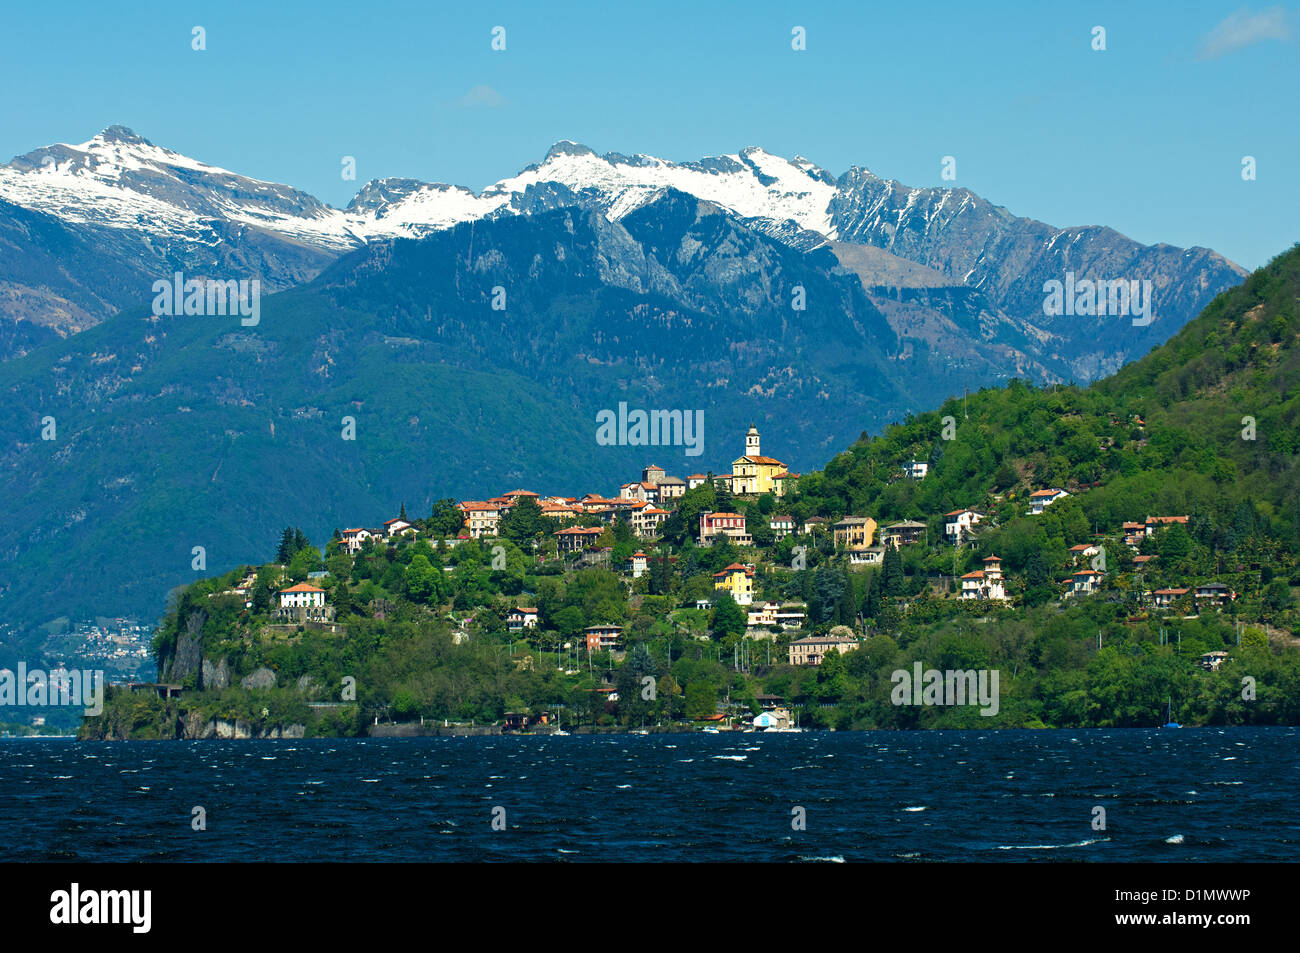 The village Pino sulla Sponda del Lago Maggiore at the Lago Maggiore lake, Lombardy, Italy Stock Photo